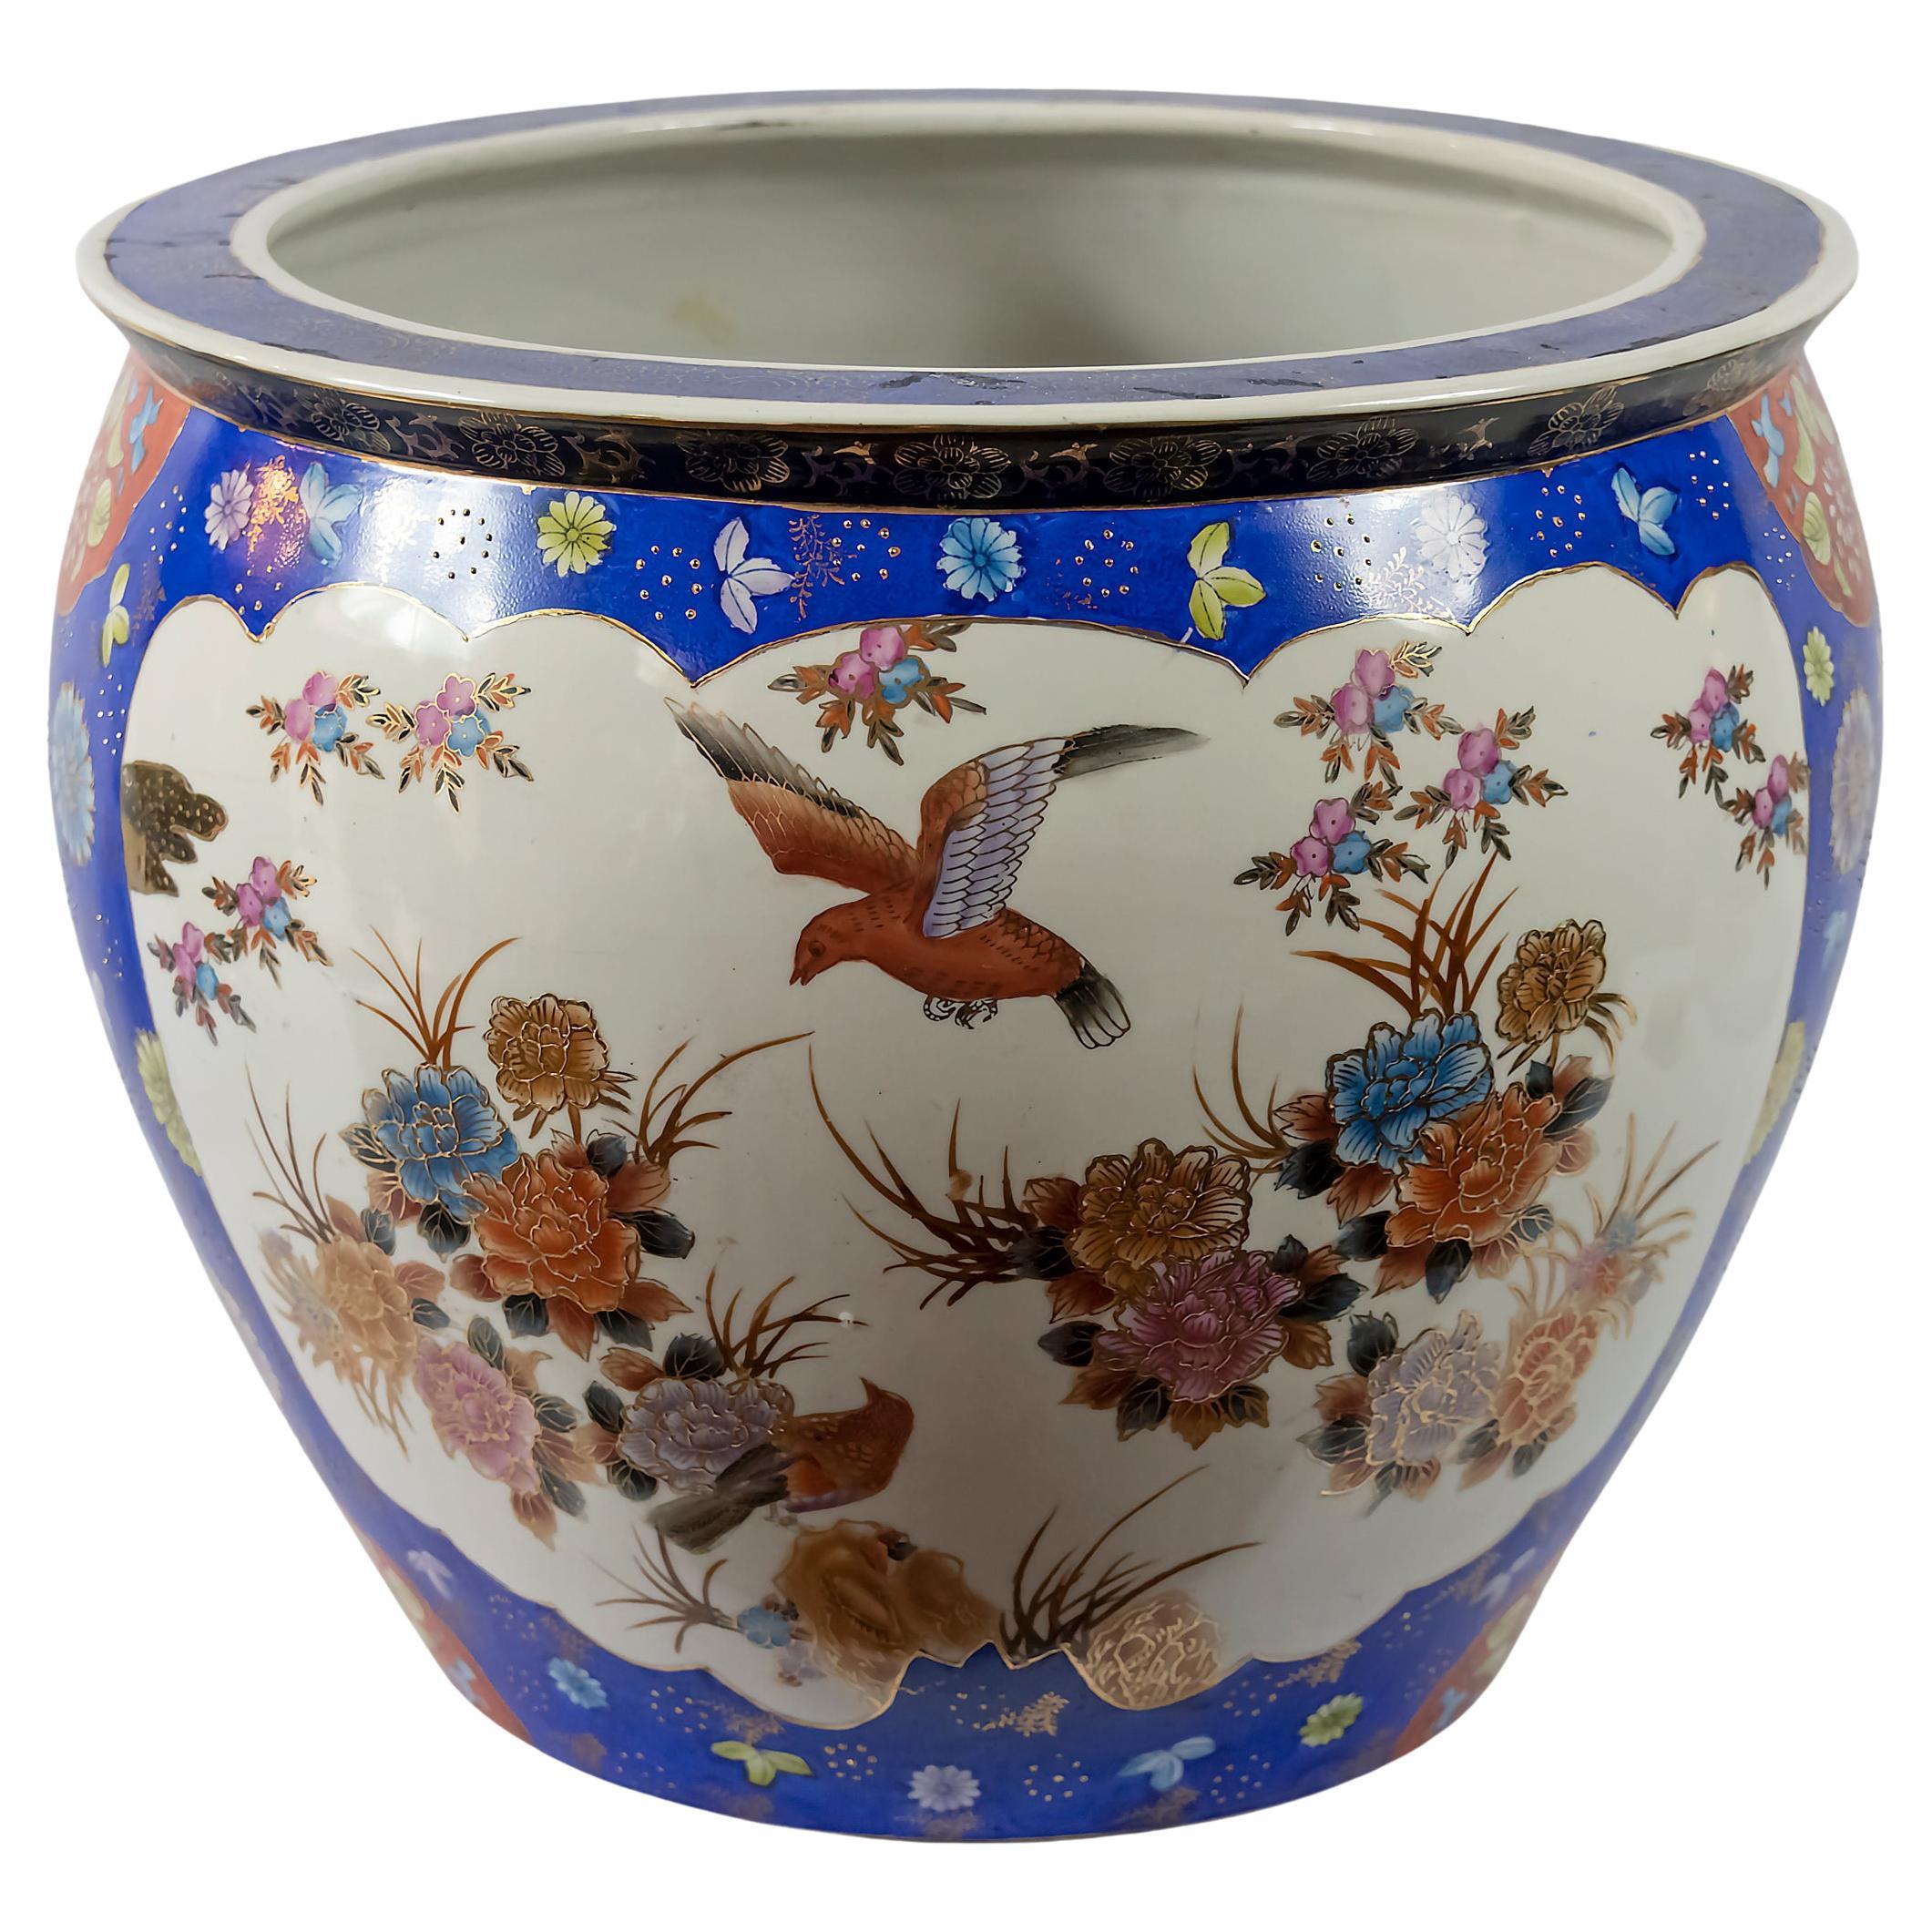 Handmade Ceramic Blue Planter with Bird 